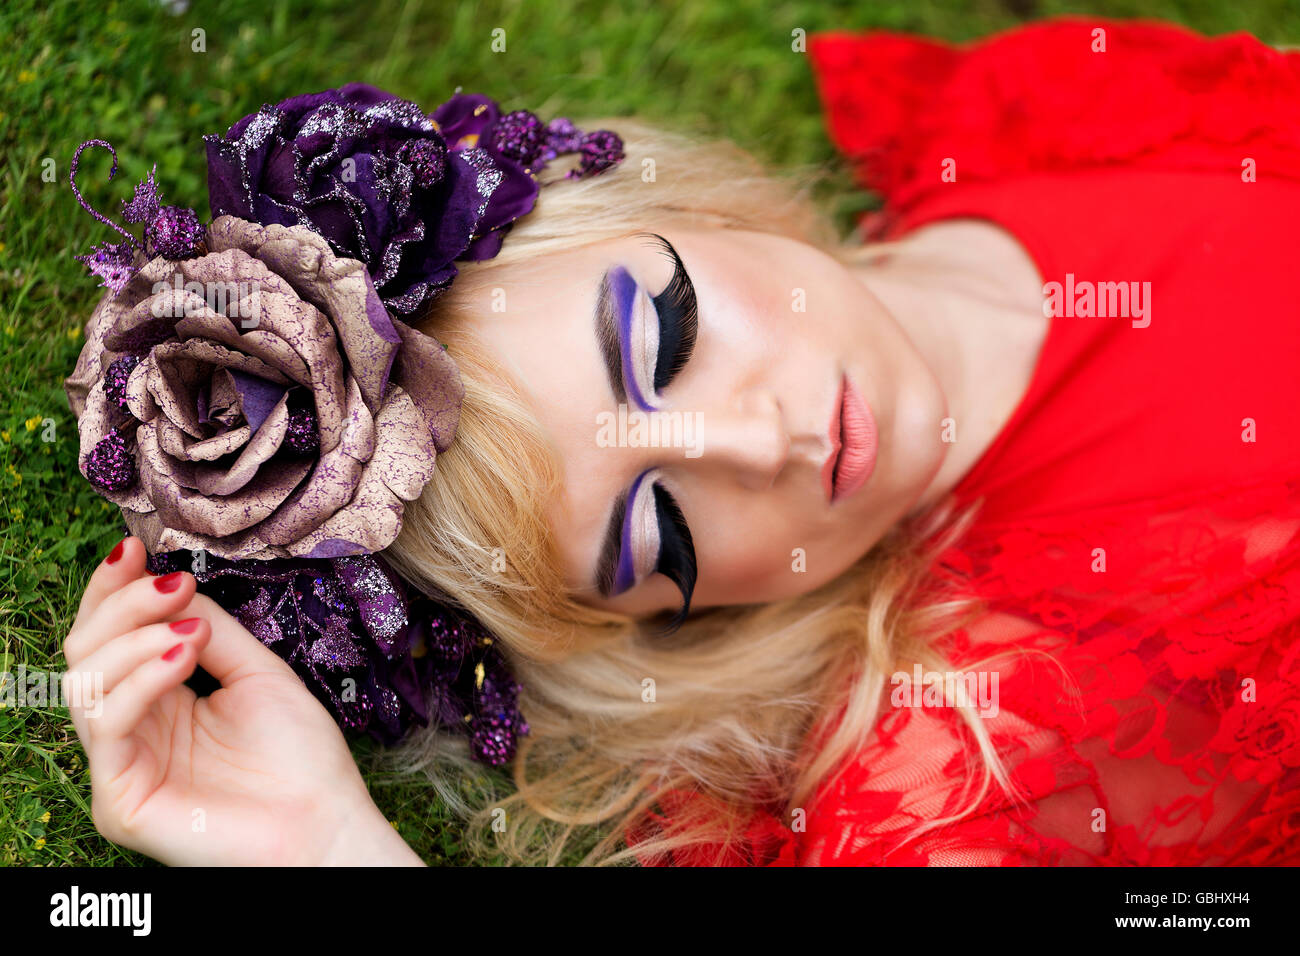 Blonde modèle, traits délicats, la couronne de fleurs de mauve, ailé, d'eyeliner cils énorme, robe en dentelle rouge, couché sur l'herbe de couchage Banque D'Images